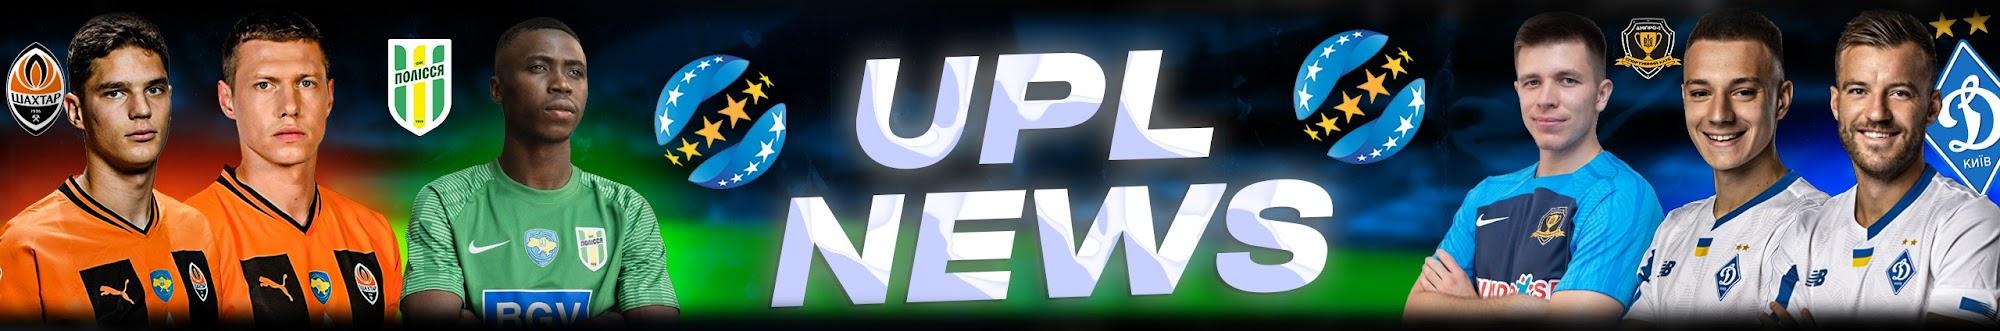 UPL NEWS 